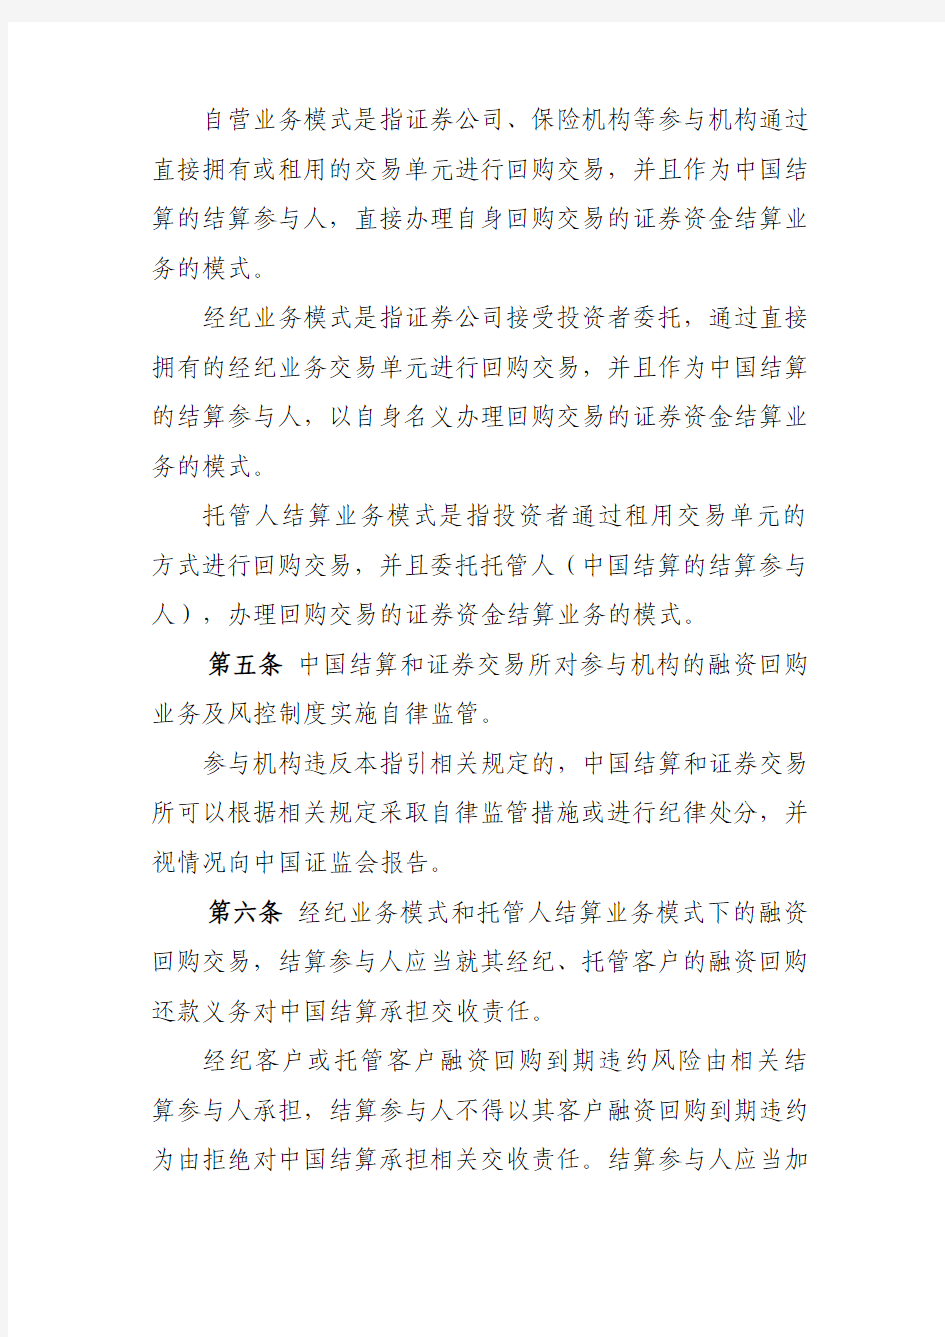 12-1 中国证券登记结算有限责任公司、上海证券交易所、深圳证券交易所债券质押式回购交易结算风险控制指引